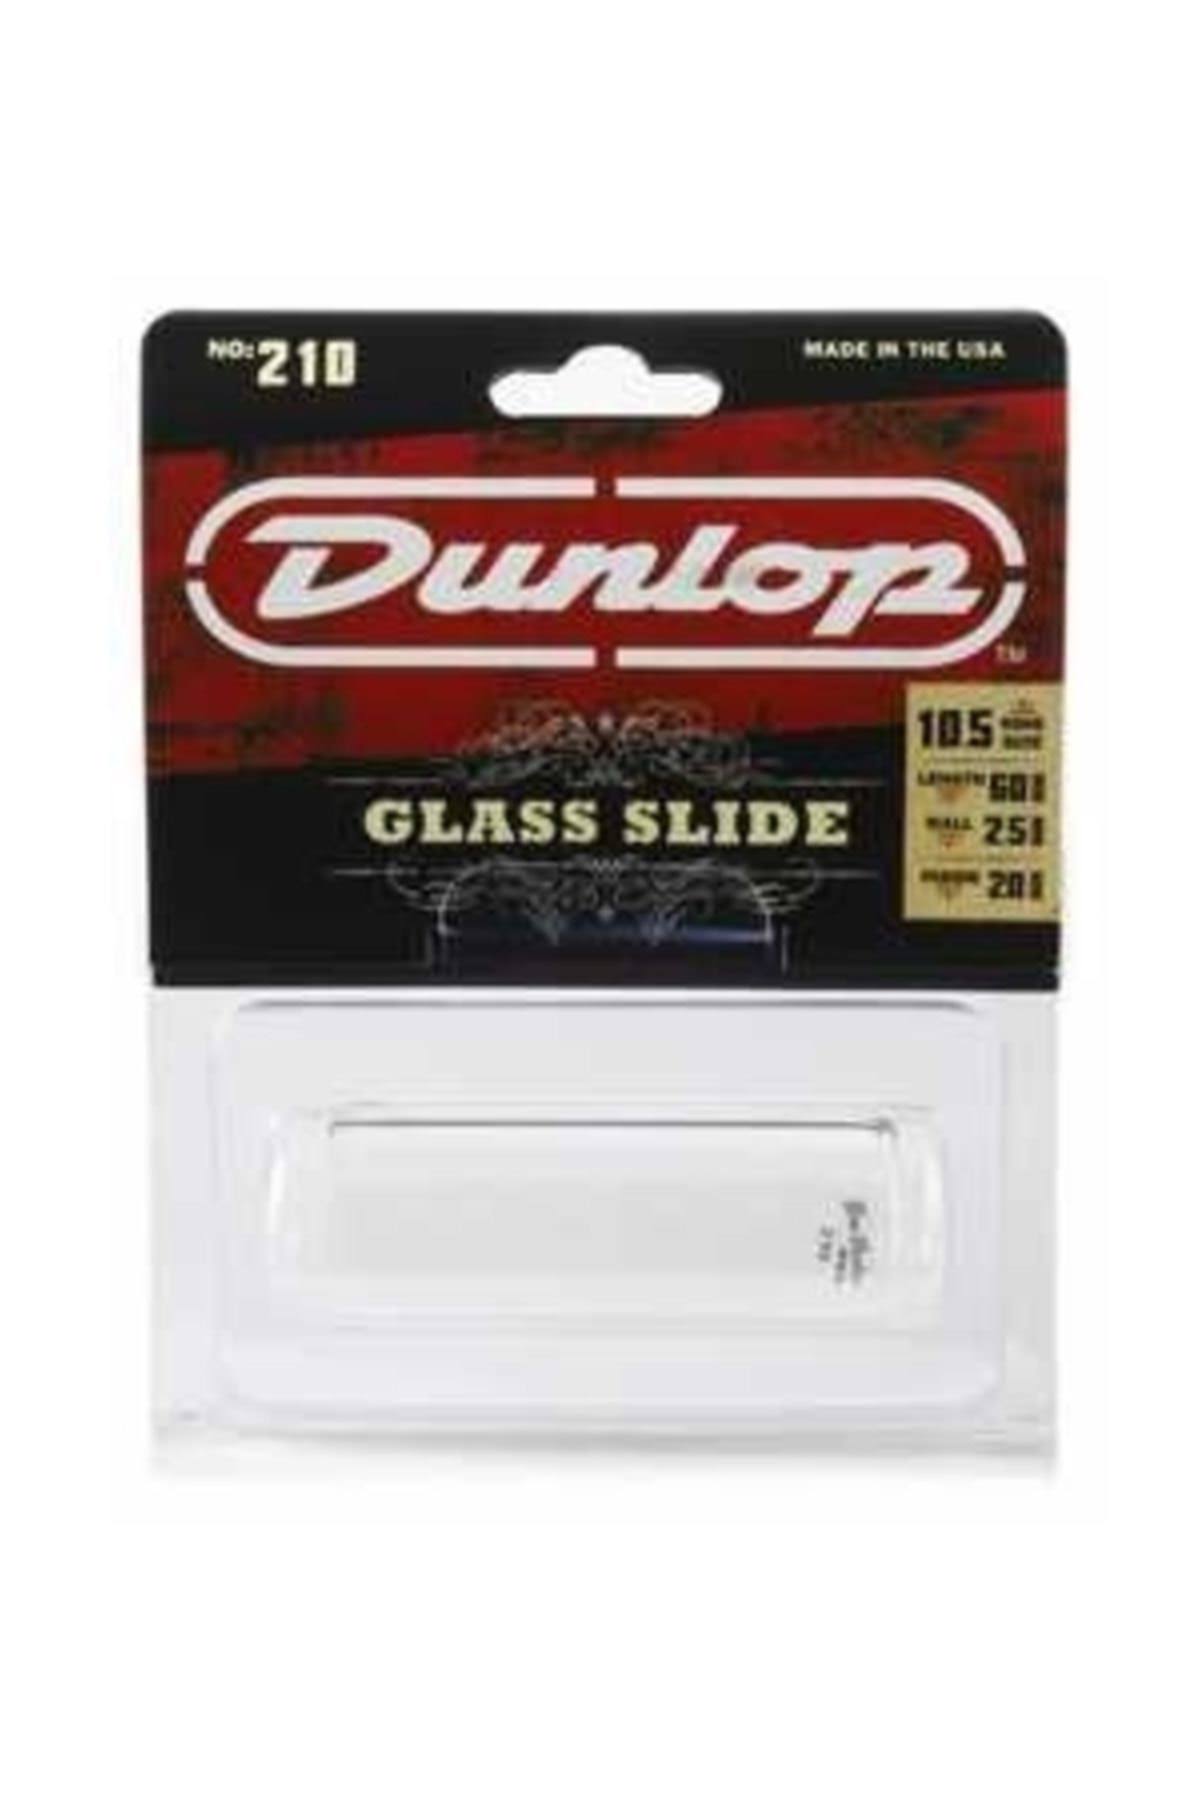 Dunlop Glass Guitar Slide - Medium Wall, Medium